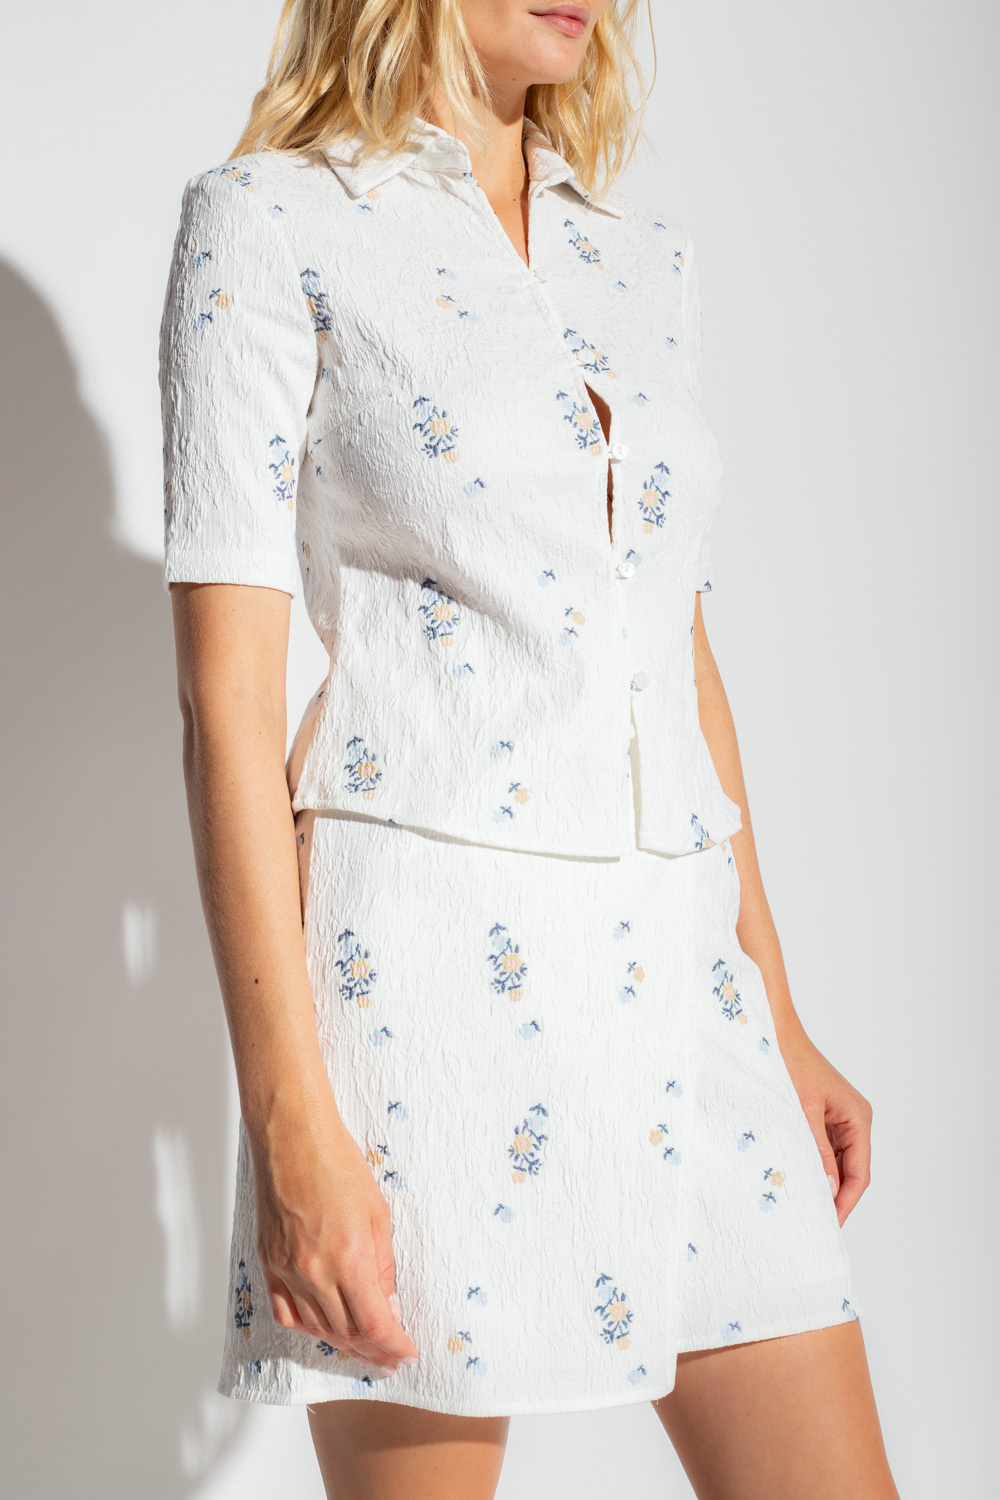 Samsøe Samsøe ‘Mariah’ floral shirt